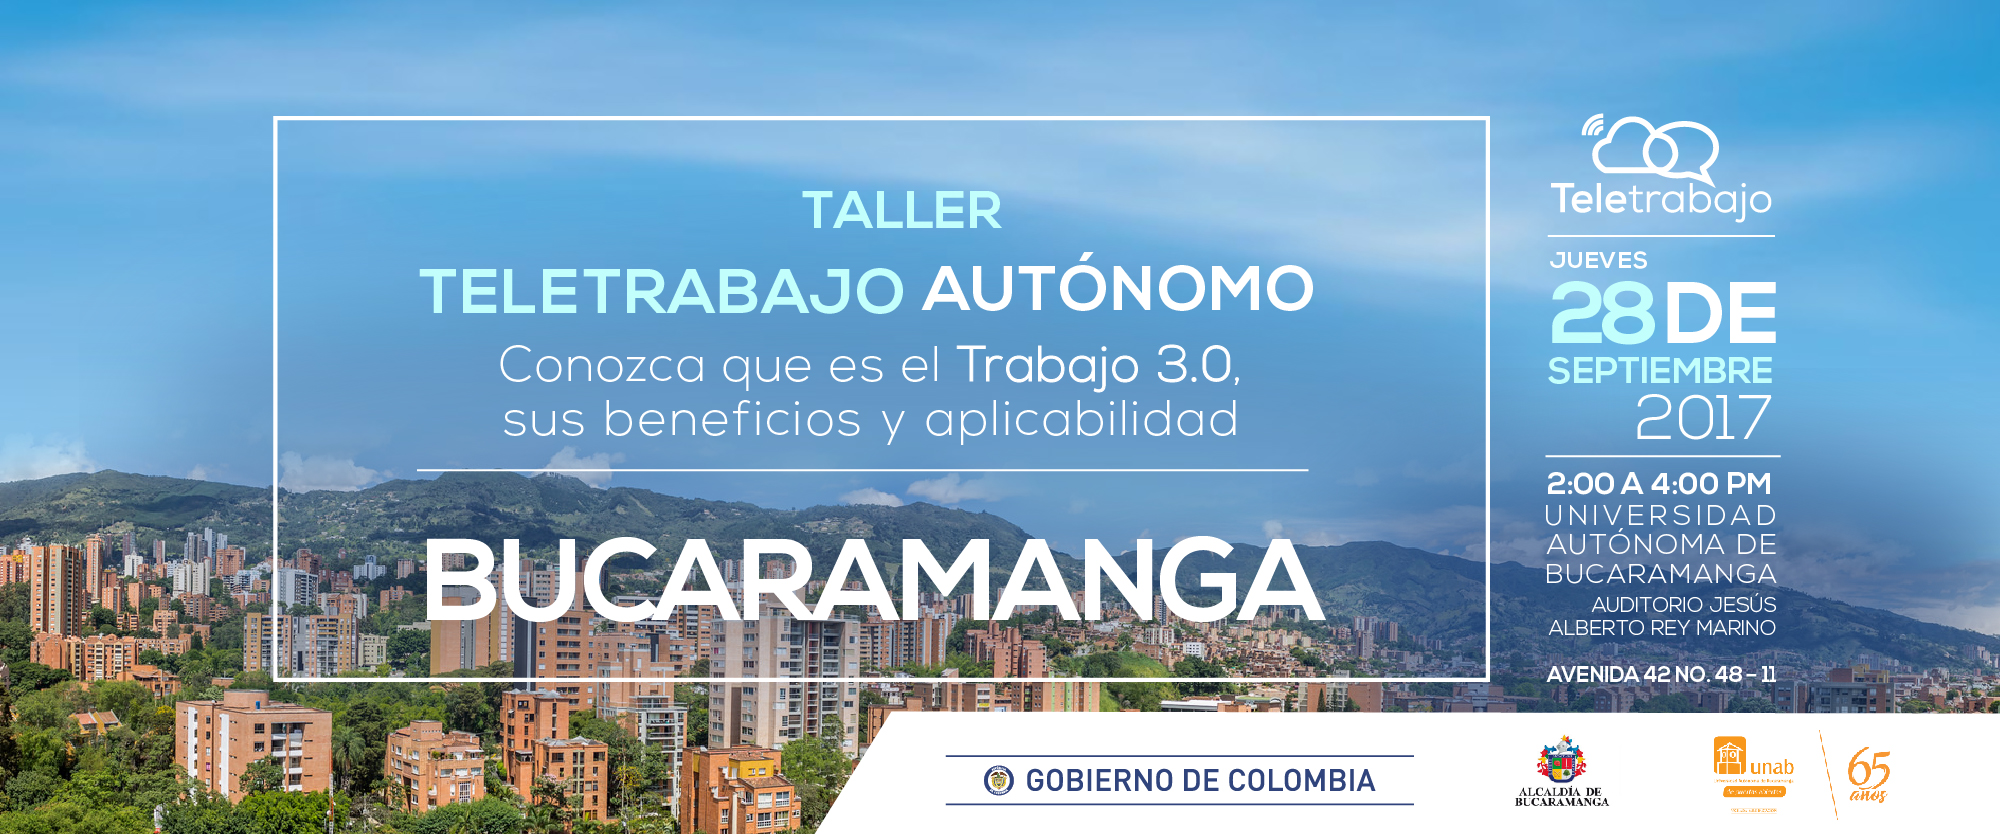 Bucaramanga se prepara para el Teletrabajo con dos talleres el 28 de septiembre